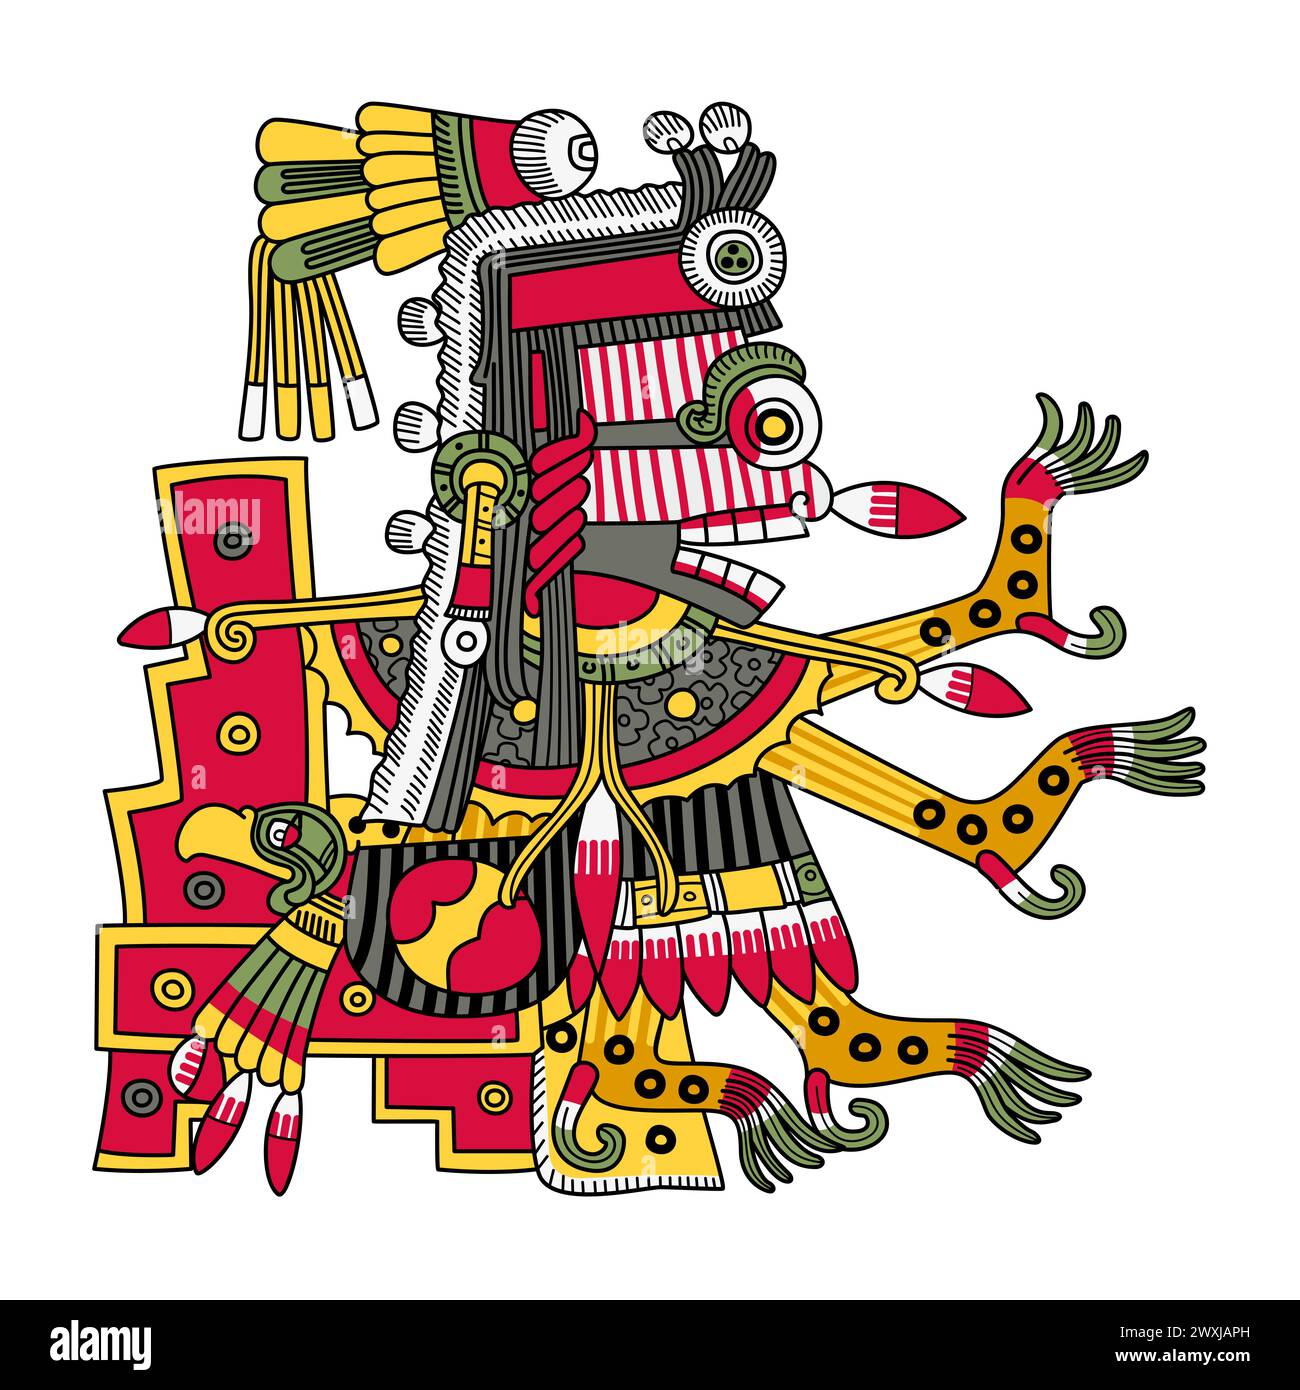 Itzpapalotl, dea della morte azteca, guerriero scheletrico sorprendente, regina dello Tzitzimimeh, i demoni stellari, che possono divorare le persone durante le eclissi solari. Foto Stock